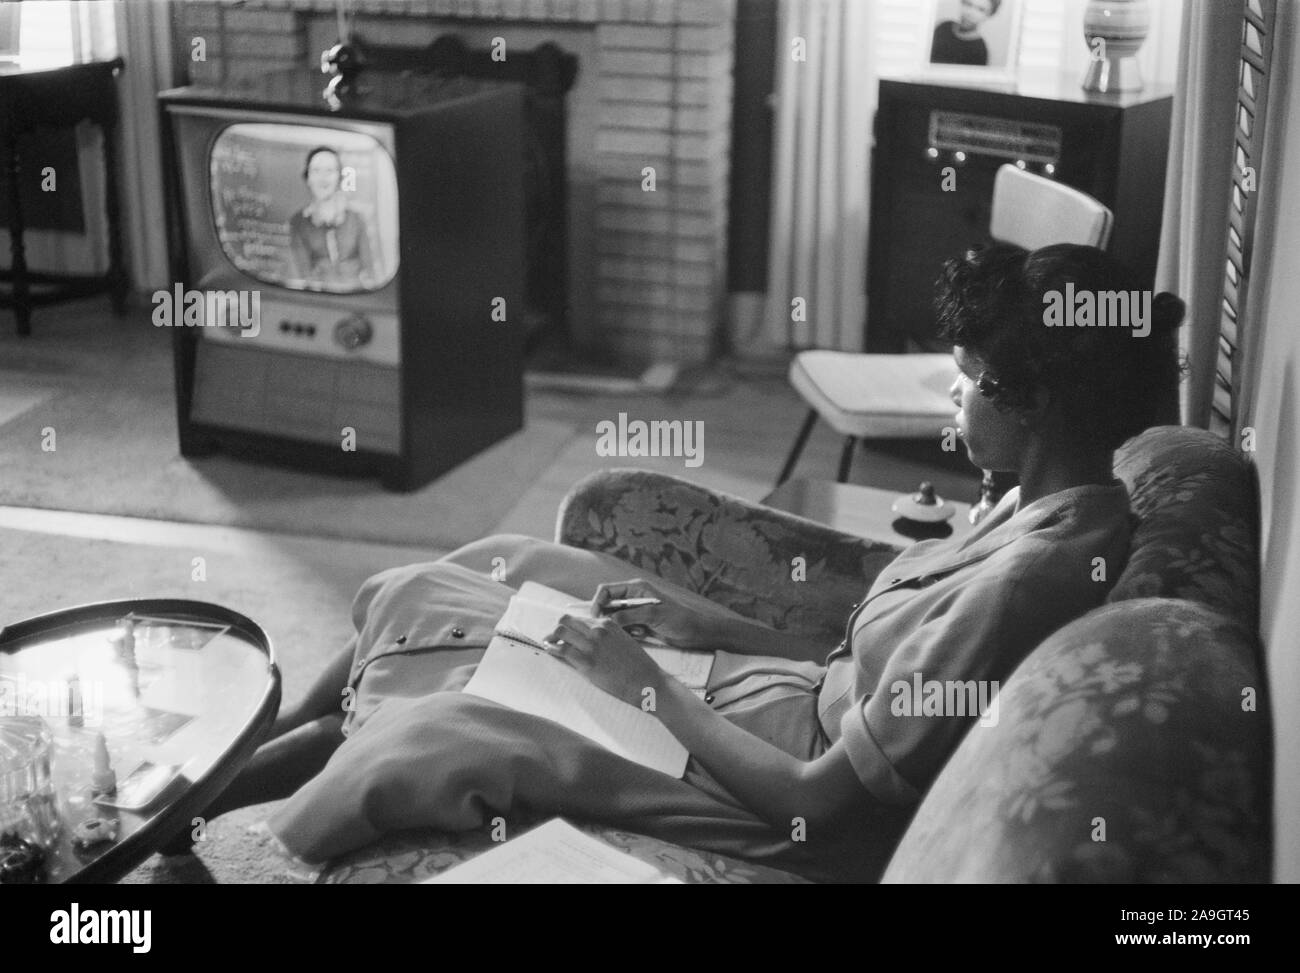 Afro-amerikanische High School Mädchen gebildet, über das Fernsehen während der Periode, die Schulen geschlossen, damit die Integration zu vermeiden Waren, Little Rock, Arkansas, USA, Foto: Thomas J. O'Halloran, September 1958 Stockfoto